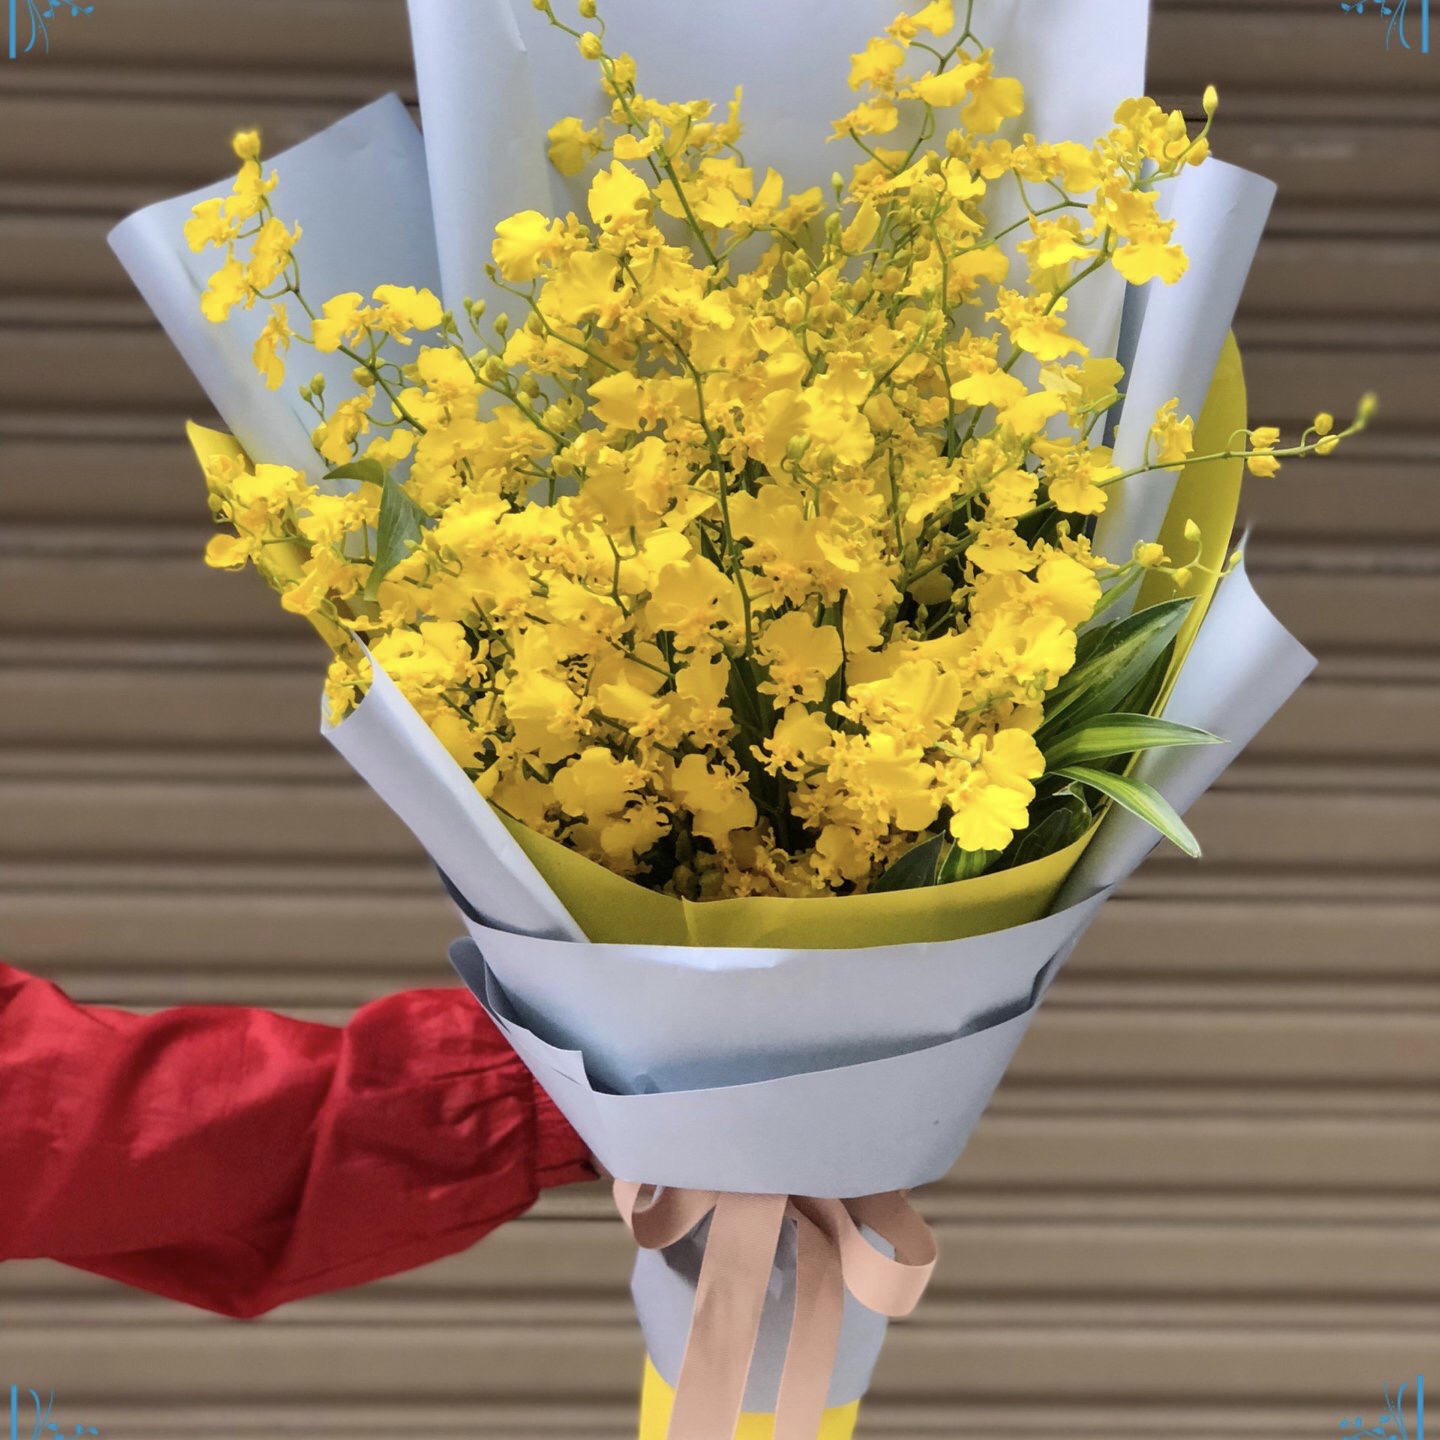 Một giỏ hoa lan lớn phù hợp làm món quà của tập thể lớp gửi đến thầy cô trong ngày 20/11.